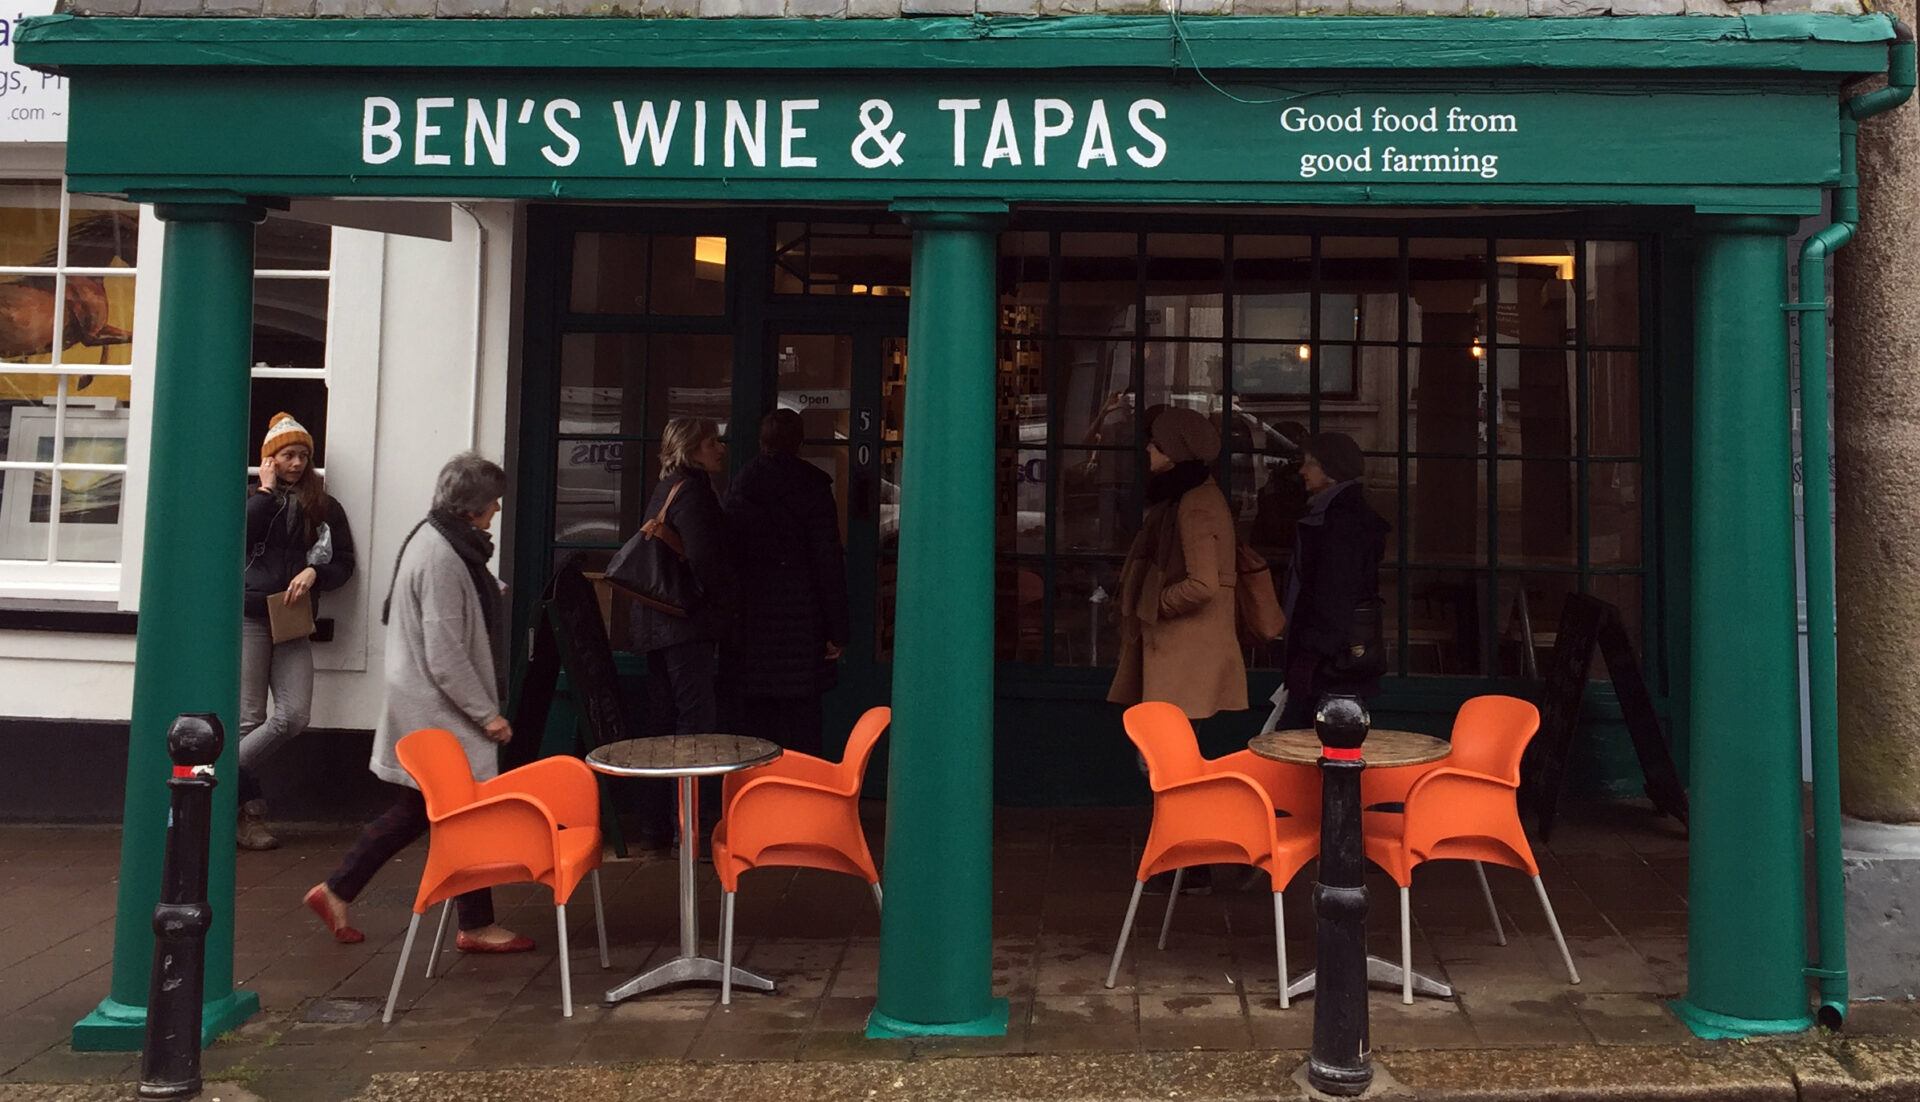 Ben's Wine & Tapas Totnes Devon